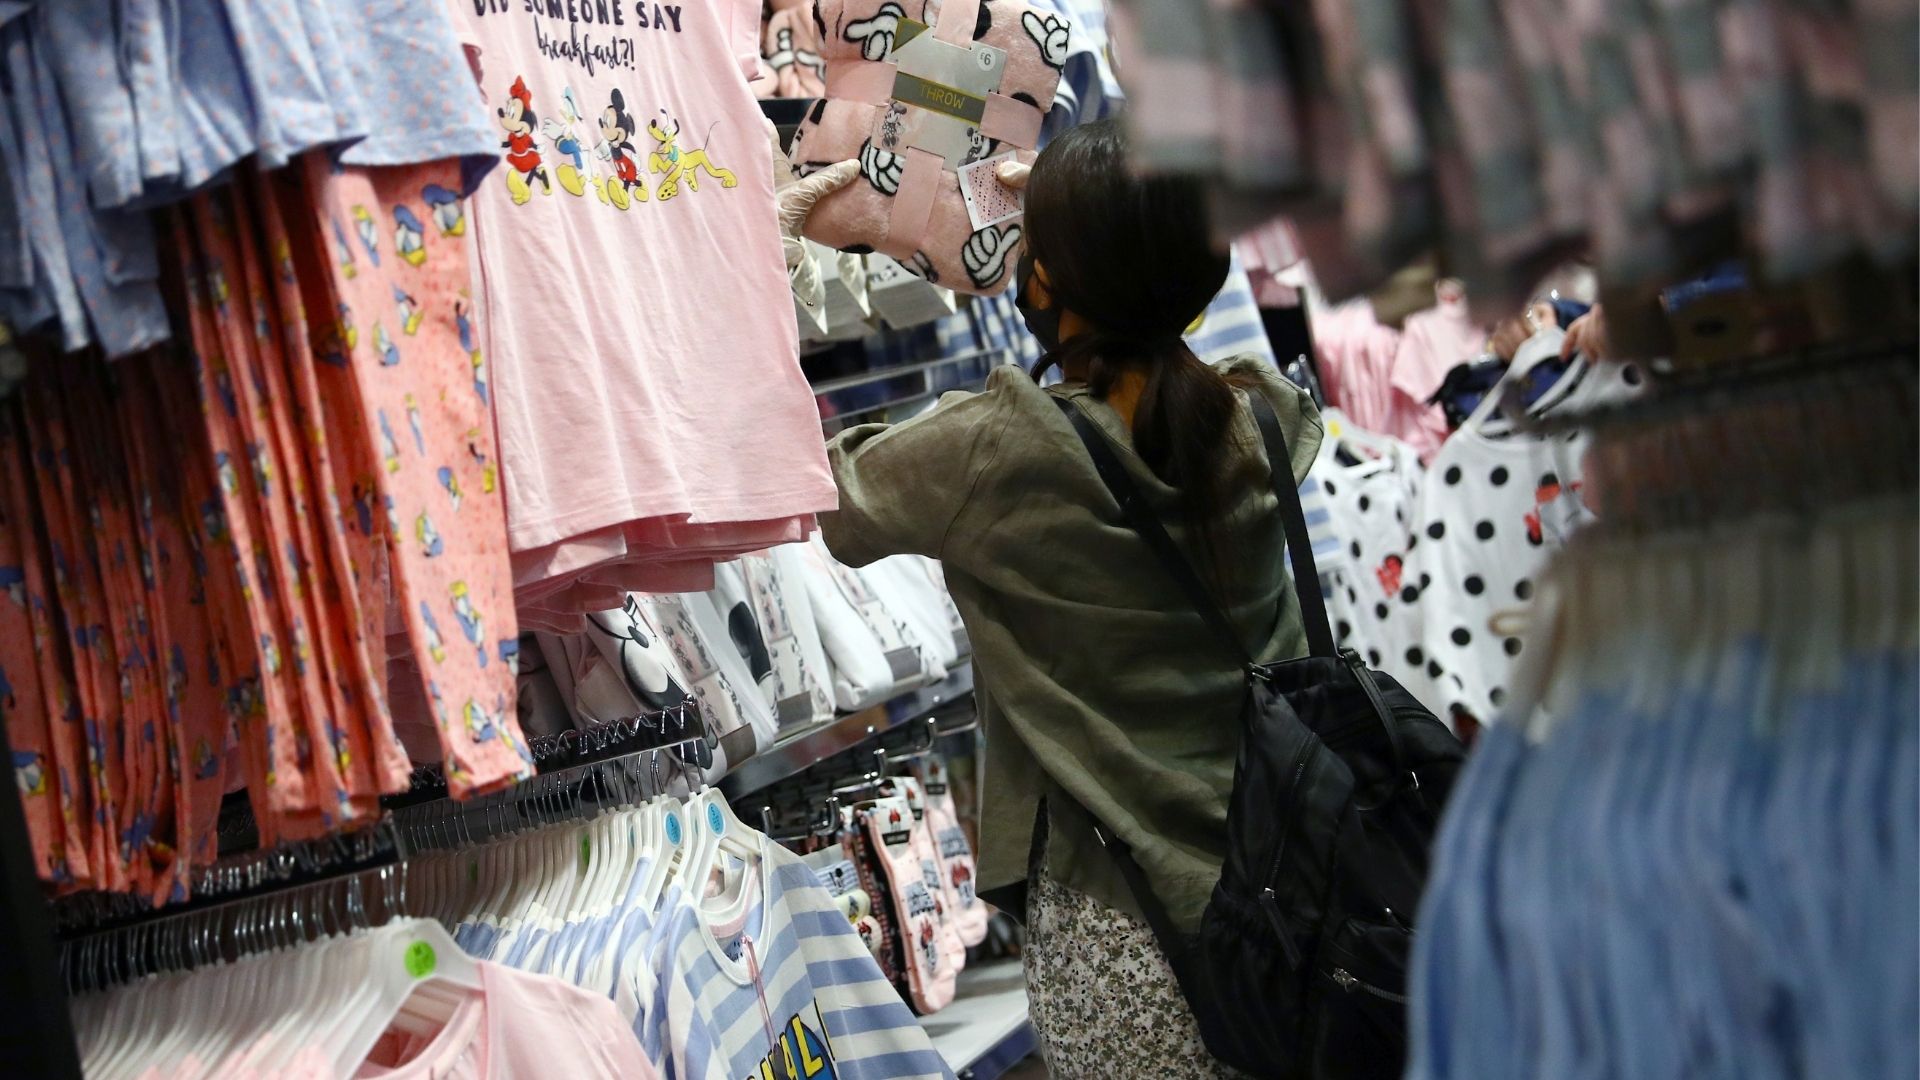 Laboratorio Tutor Ahuyentar Novedades de Primark en moda infantil desde 2 euros que te enamorarán a ti  y a los más pequeños | Business Insider España